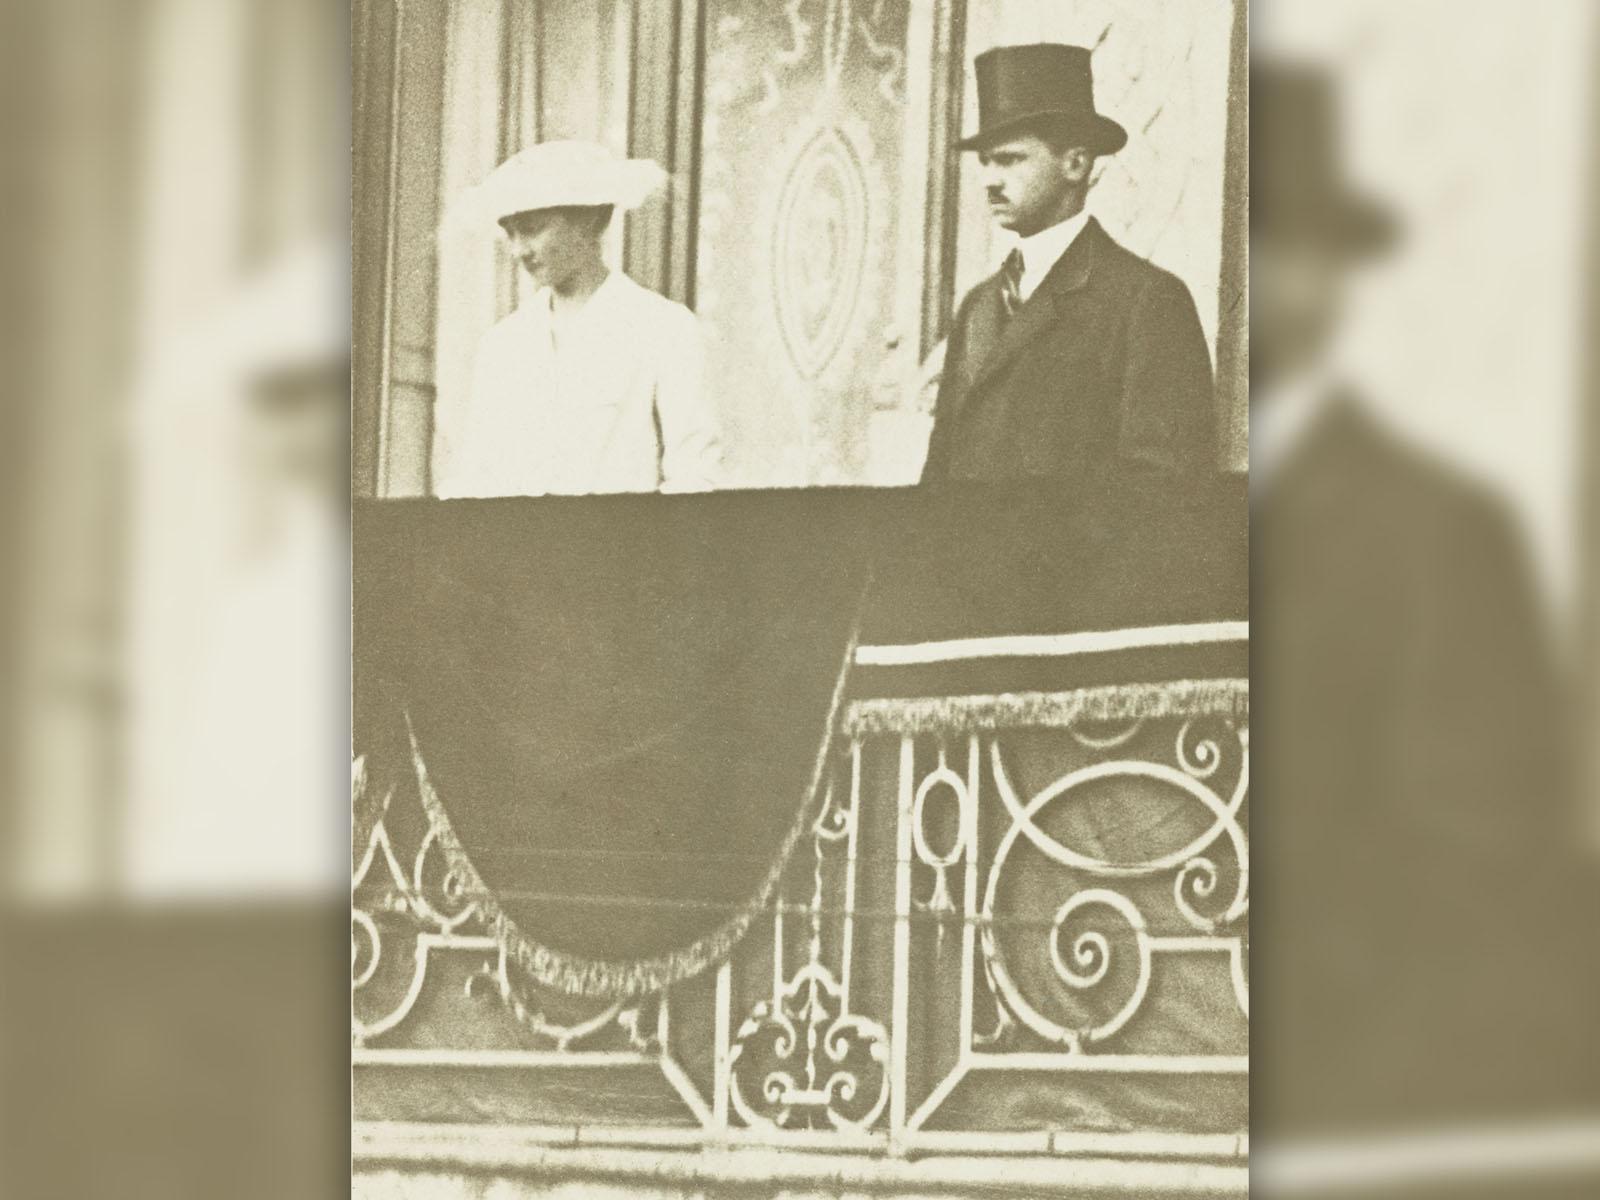 Cliché de 1920 où l’on aperçoit la Grande-Duchesse Charlotte et le Prince-Consort Félix au balcon du Palais grand-ducal lors de la procession de clôture de l’Octave